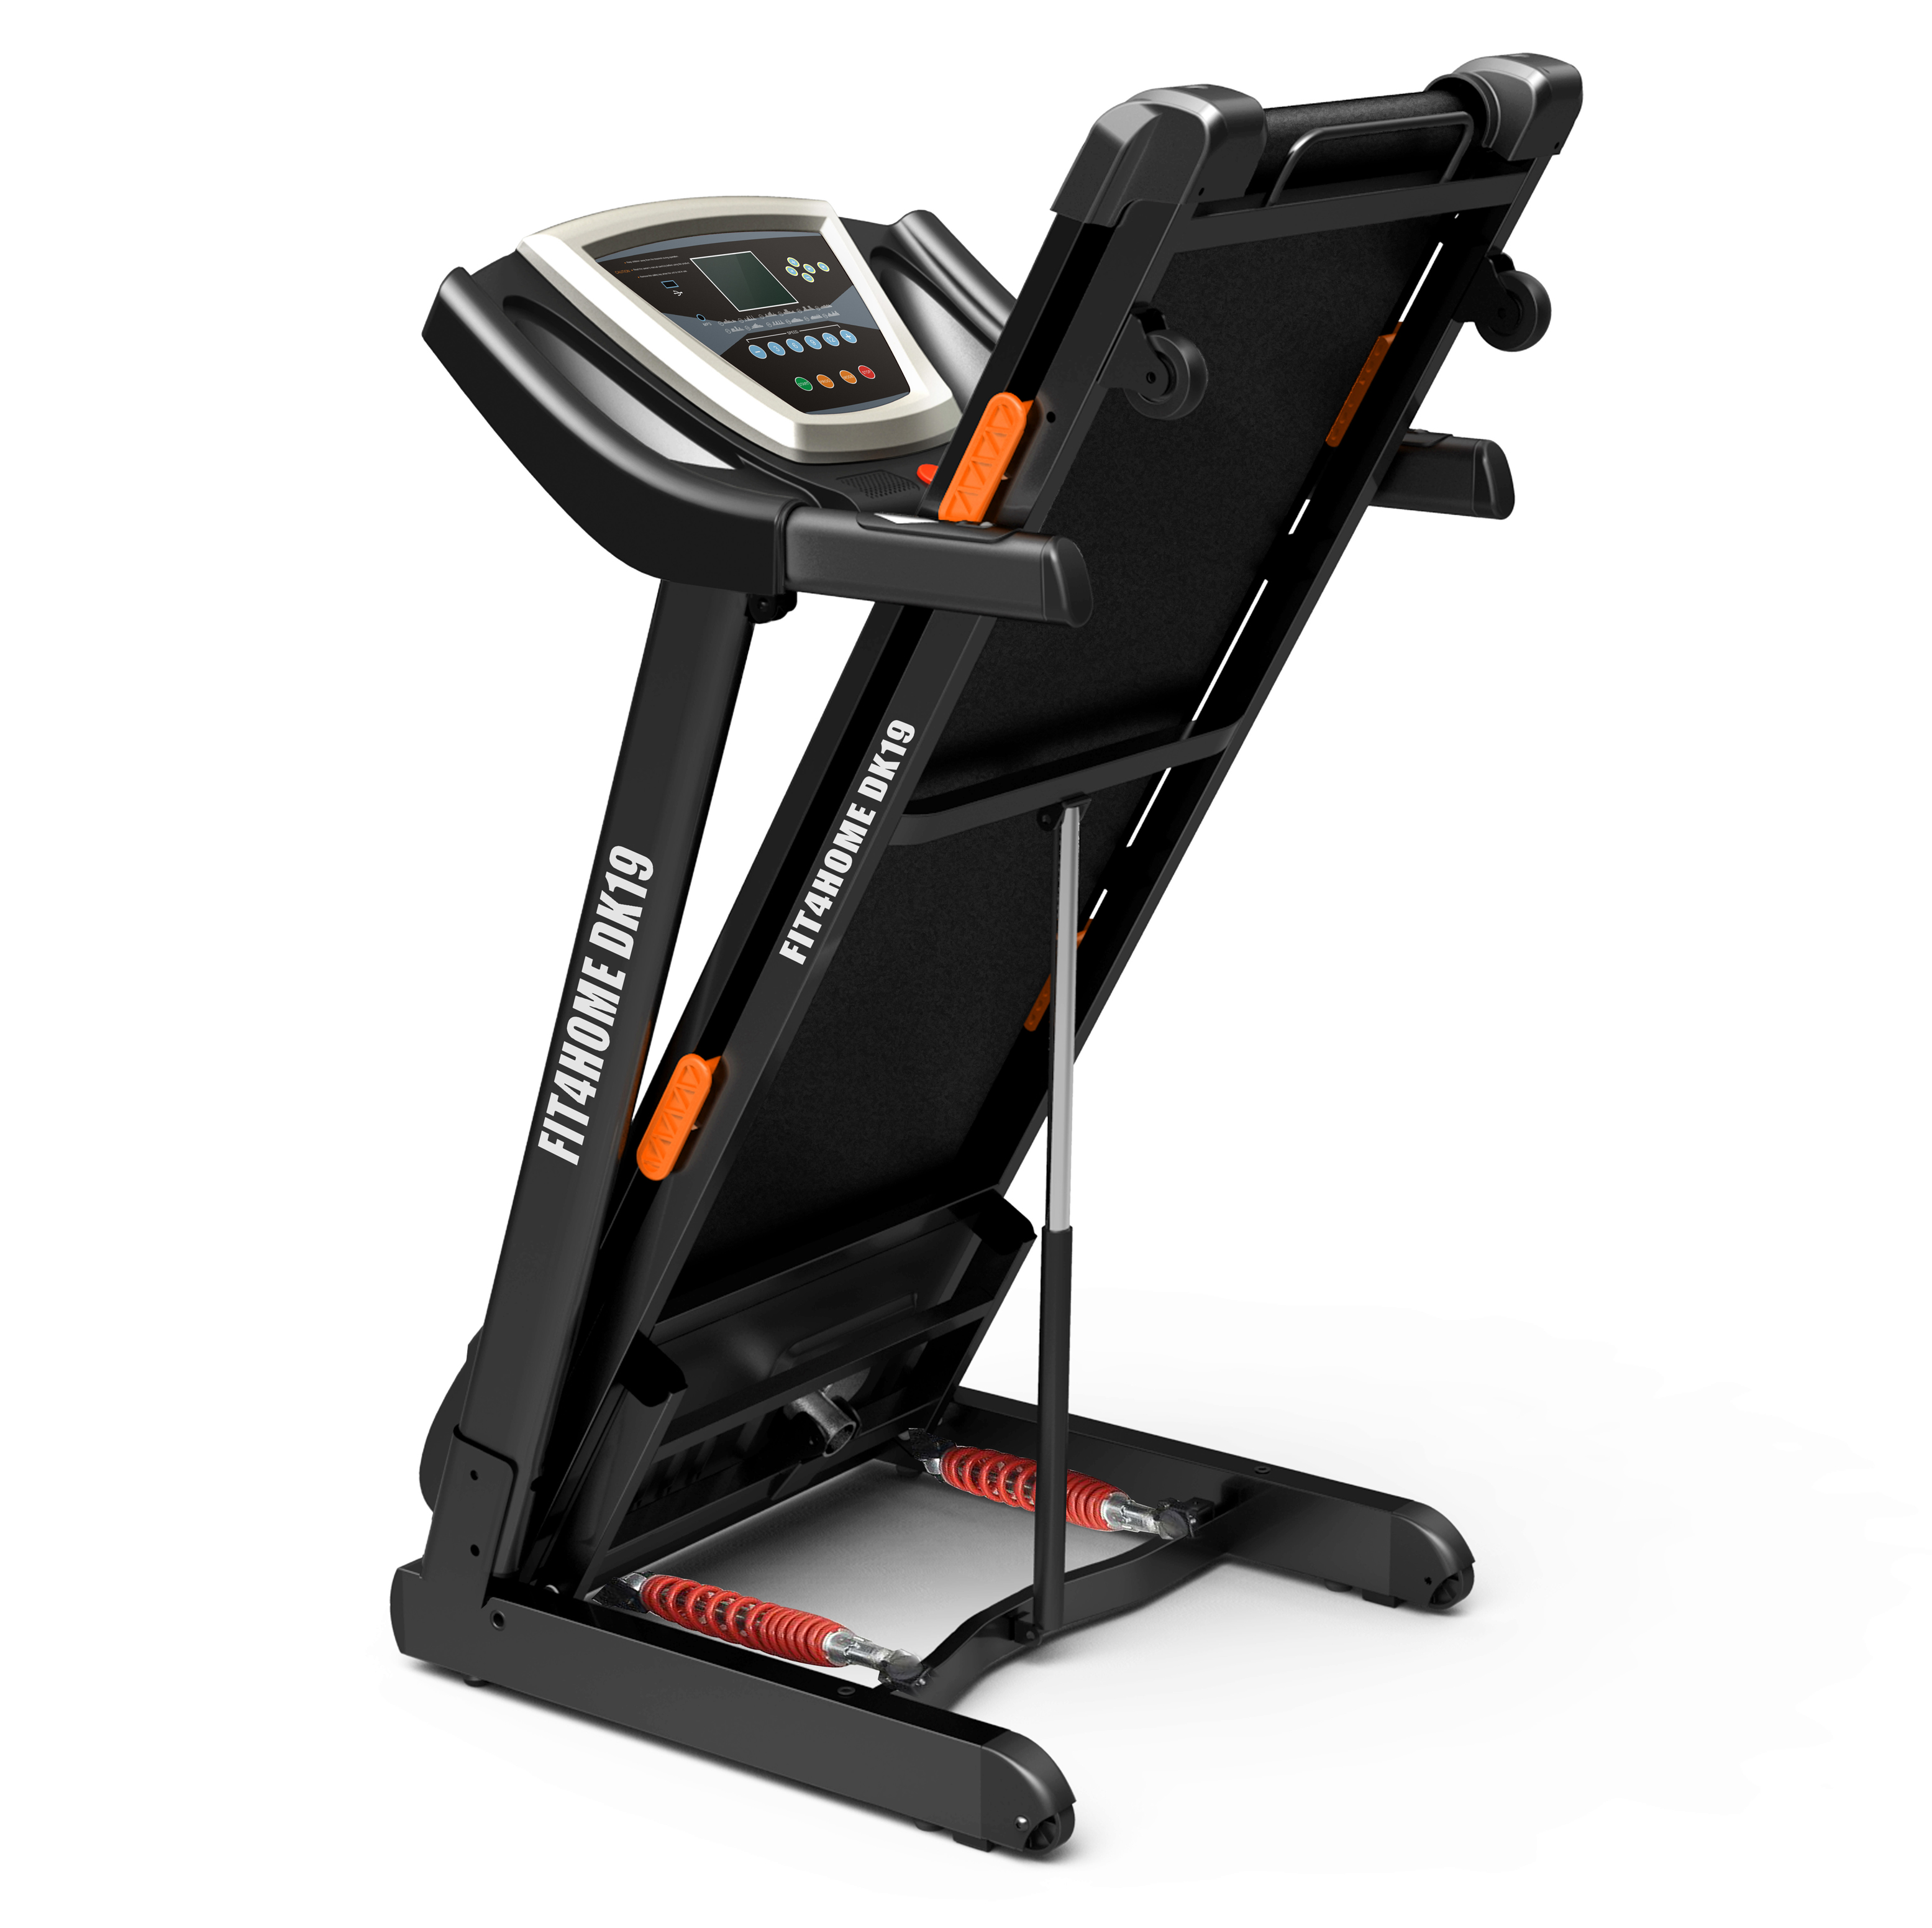 Treadmill DK-19